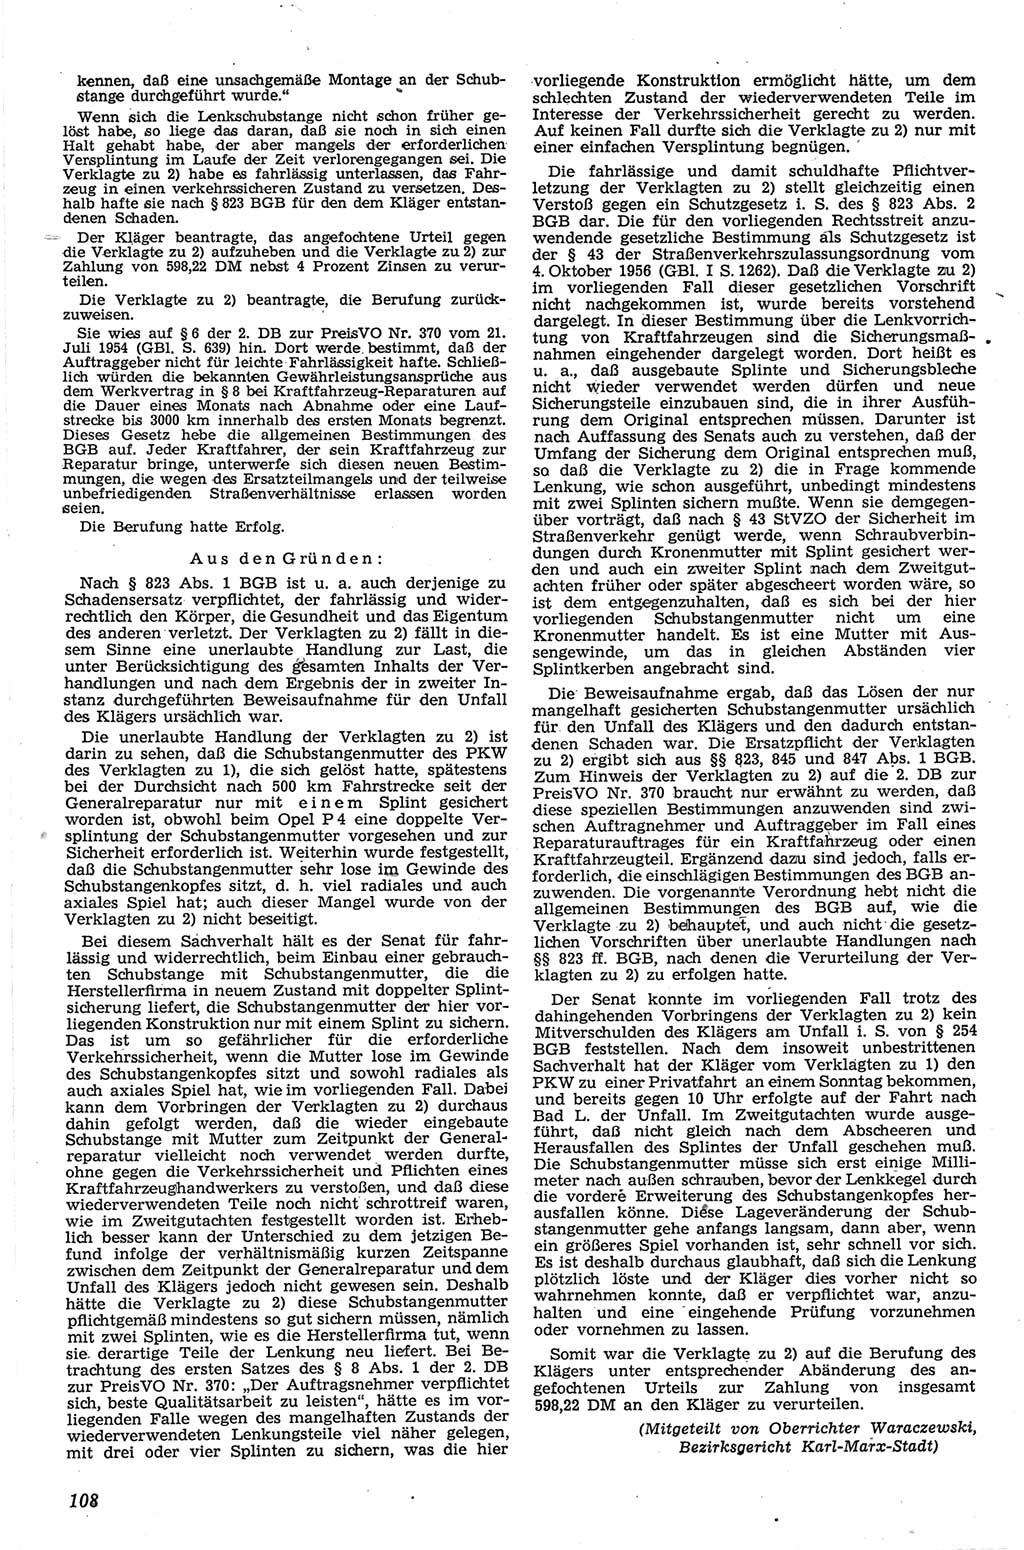 Neue Justiz (NJ), Zeitschrift für Recht und Rechtswissenschaft [Deutsche Demokratische Republik (DDR)], 13. Jahrgang 1959, Seite 108 (NJ DDR 1959, S. 108)